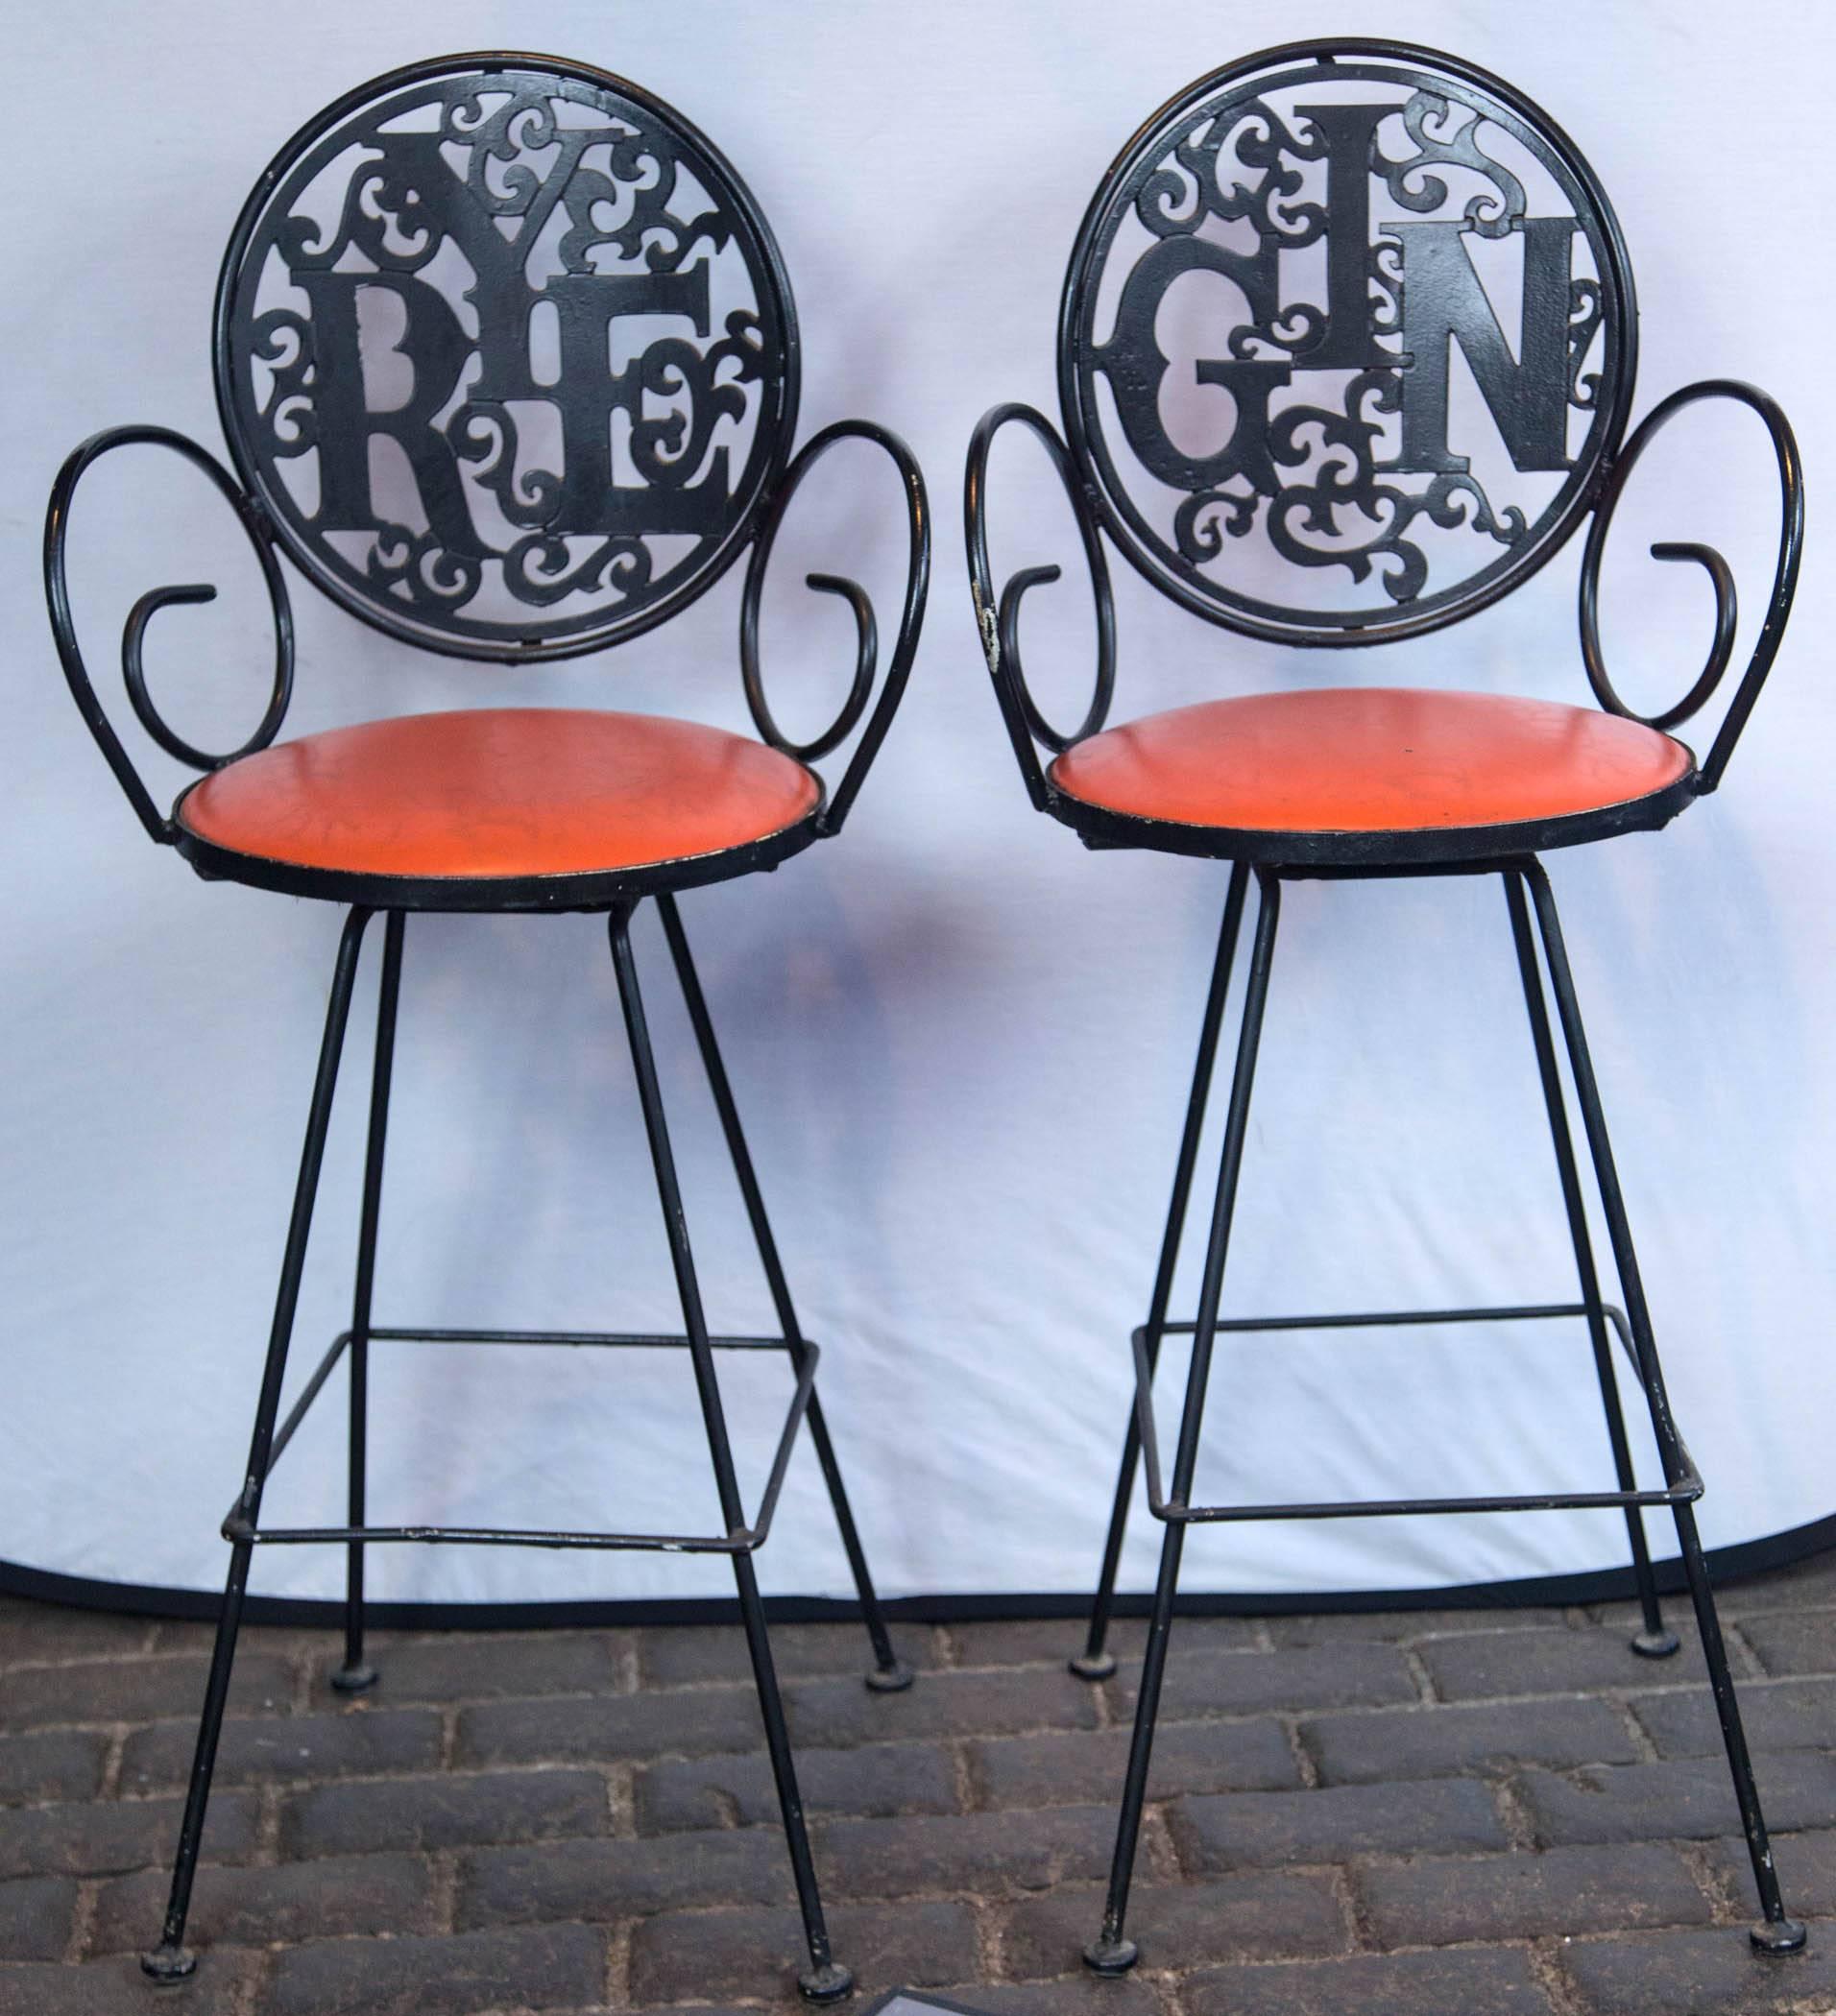 Les années 1960, un temps en pleine effervescence ! Deux tabourets en fer forgé des années 1960 d'Arthur Umanoff, Rye et Gin, avec des sièges en vinyle orange. La hauteur du siège est de 29,5 pouces.